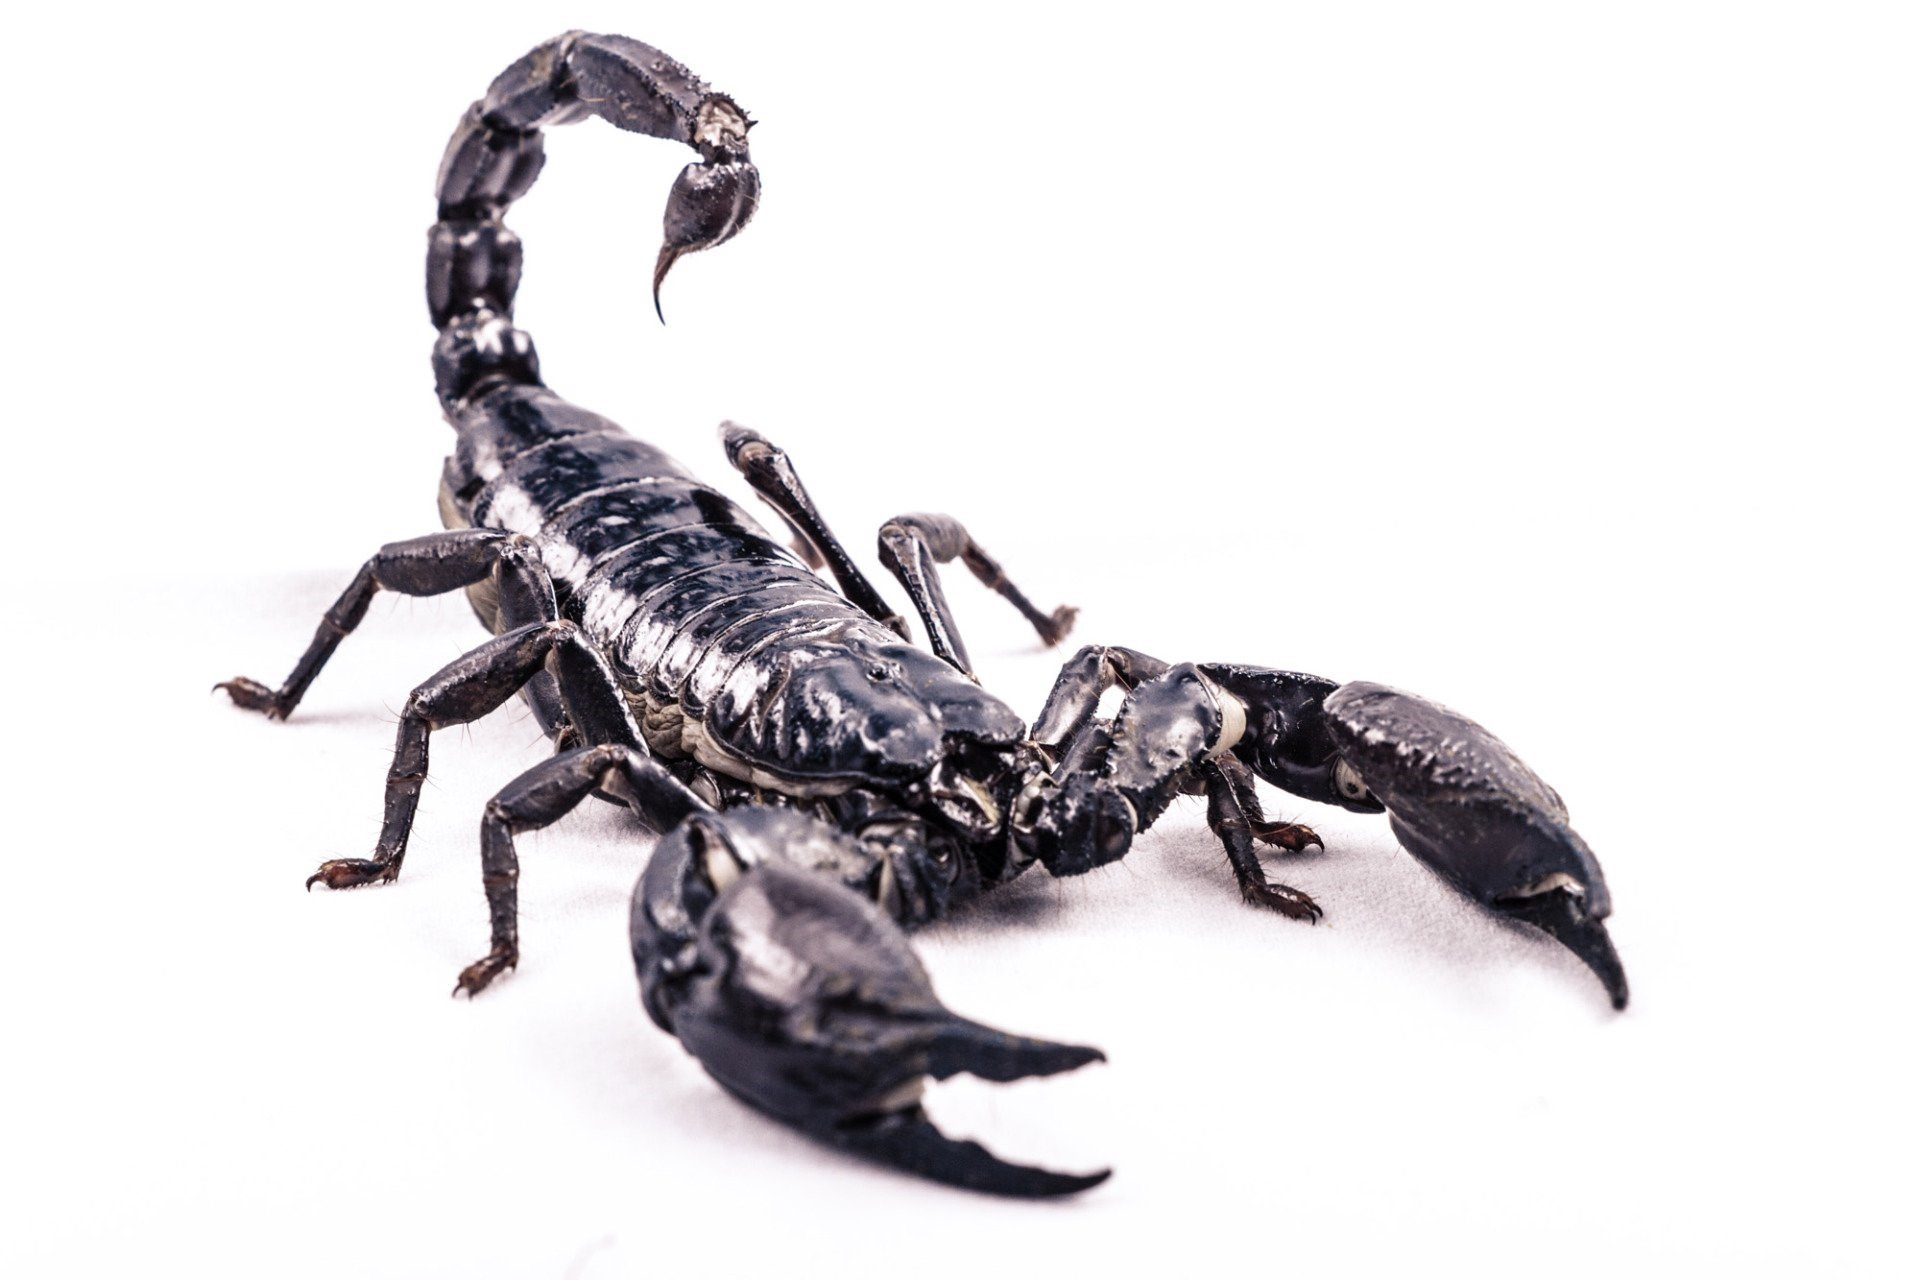 Скорпион картинка. Черный Скорпион. Скелет скорпиона. Скорпион на белом фоне. Изображение скорпиона.